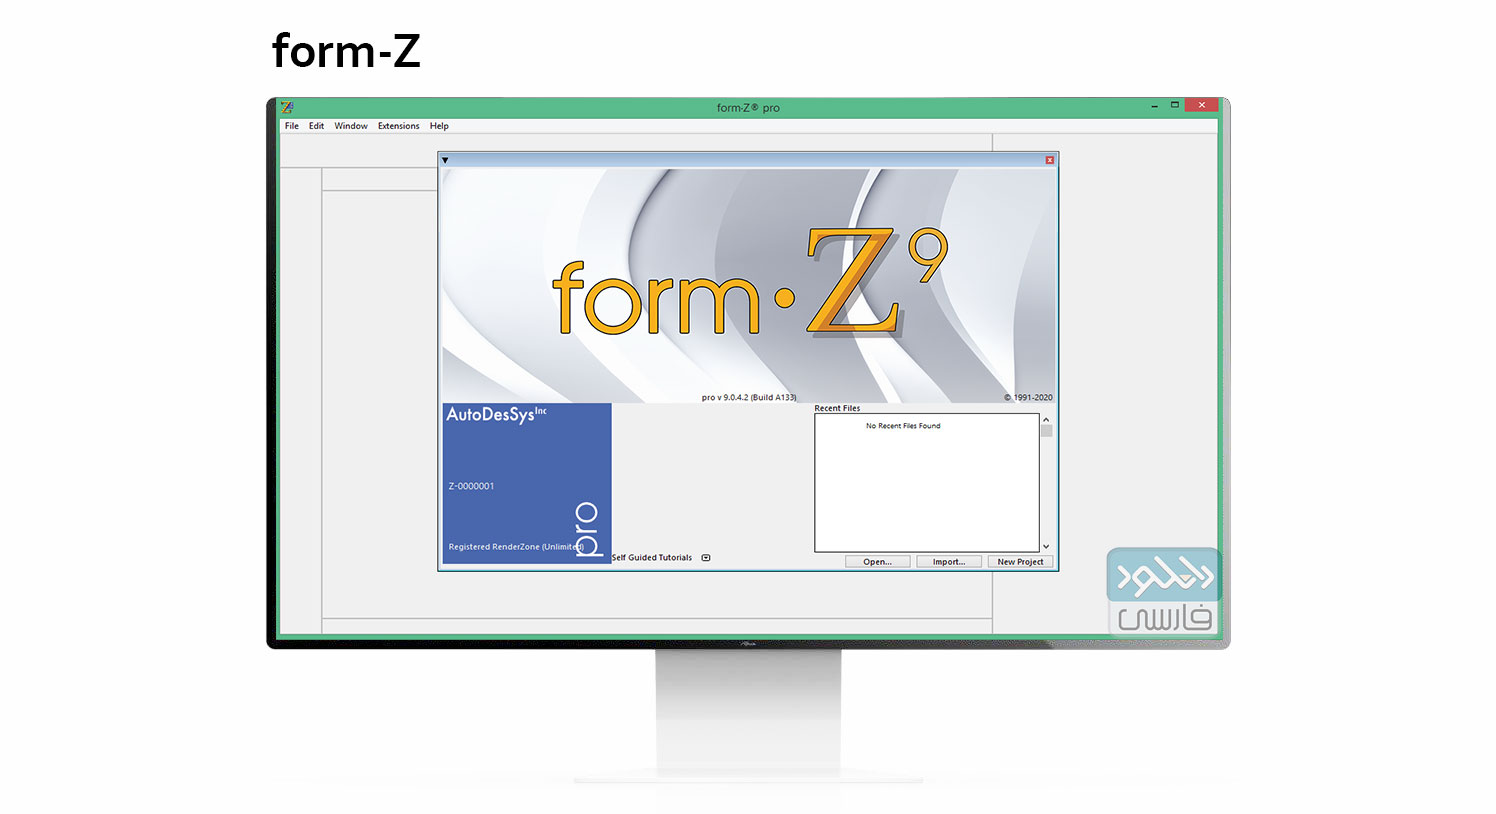 دانلود نرم افزار form-Z v9.1.0 Build A396